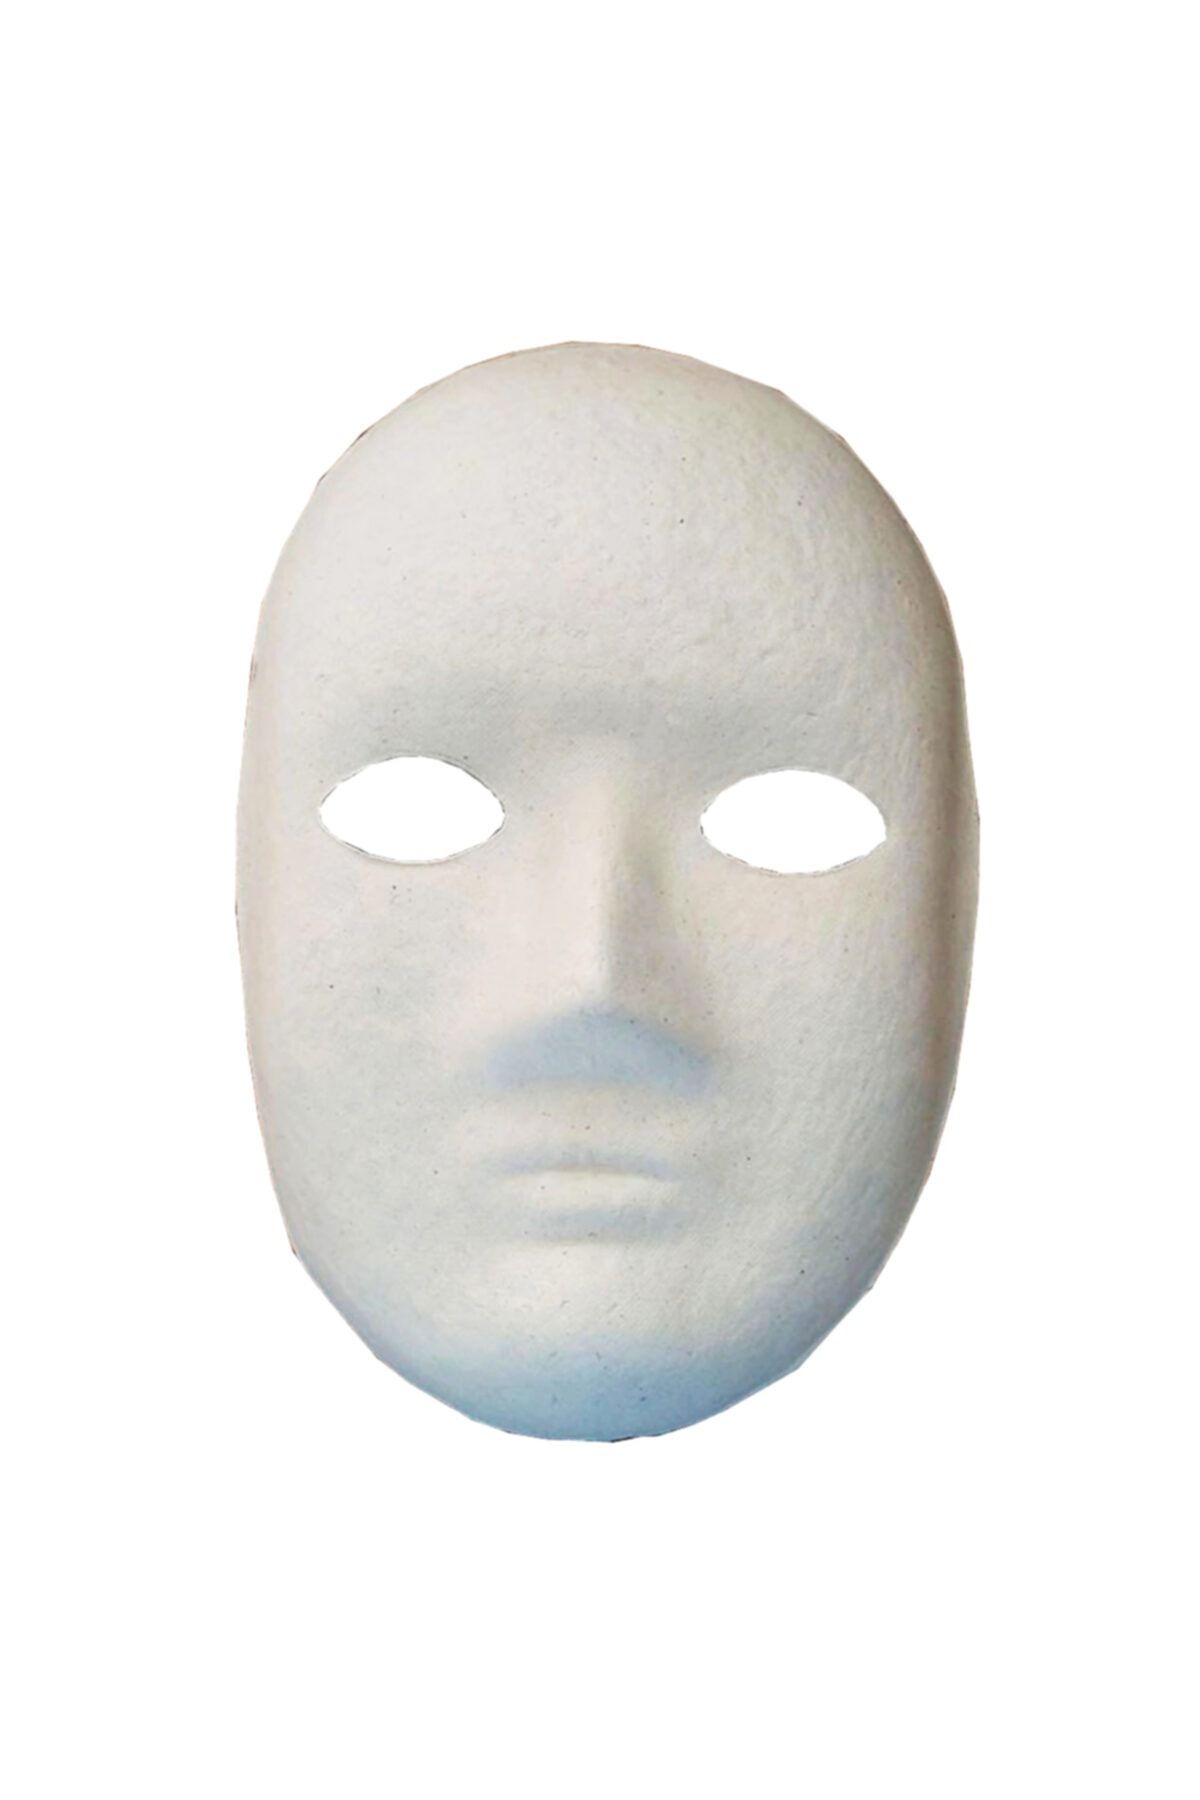 Limmy Boyanabilir Boyama Maskesi ( Erkek ) Kağıt Karton Maske - 10 Adet